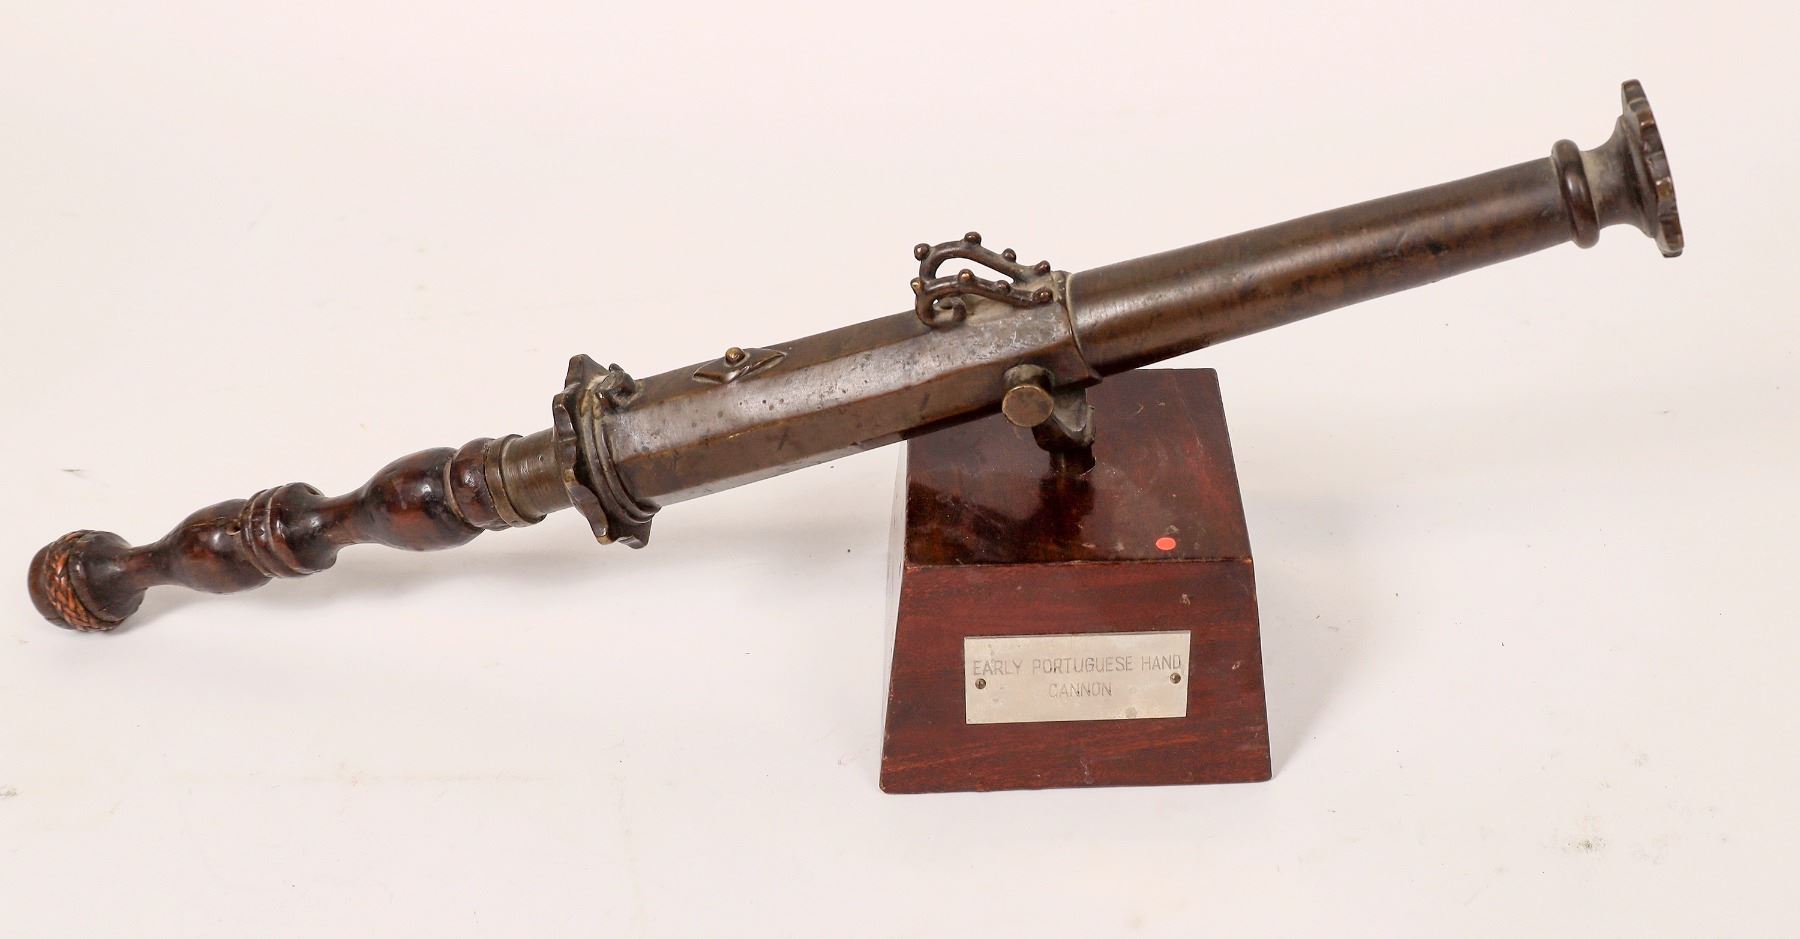 Antique Portuguese bronze hand cannon, est. $7,000-$10,000